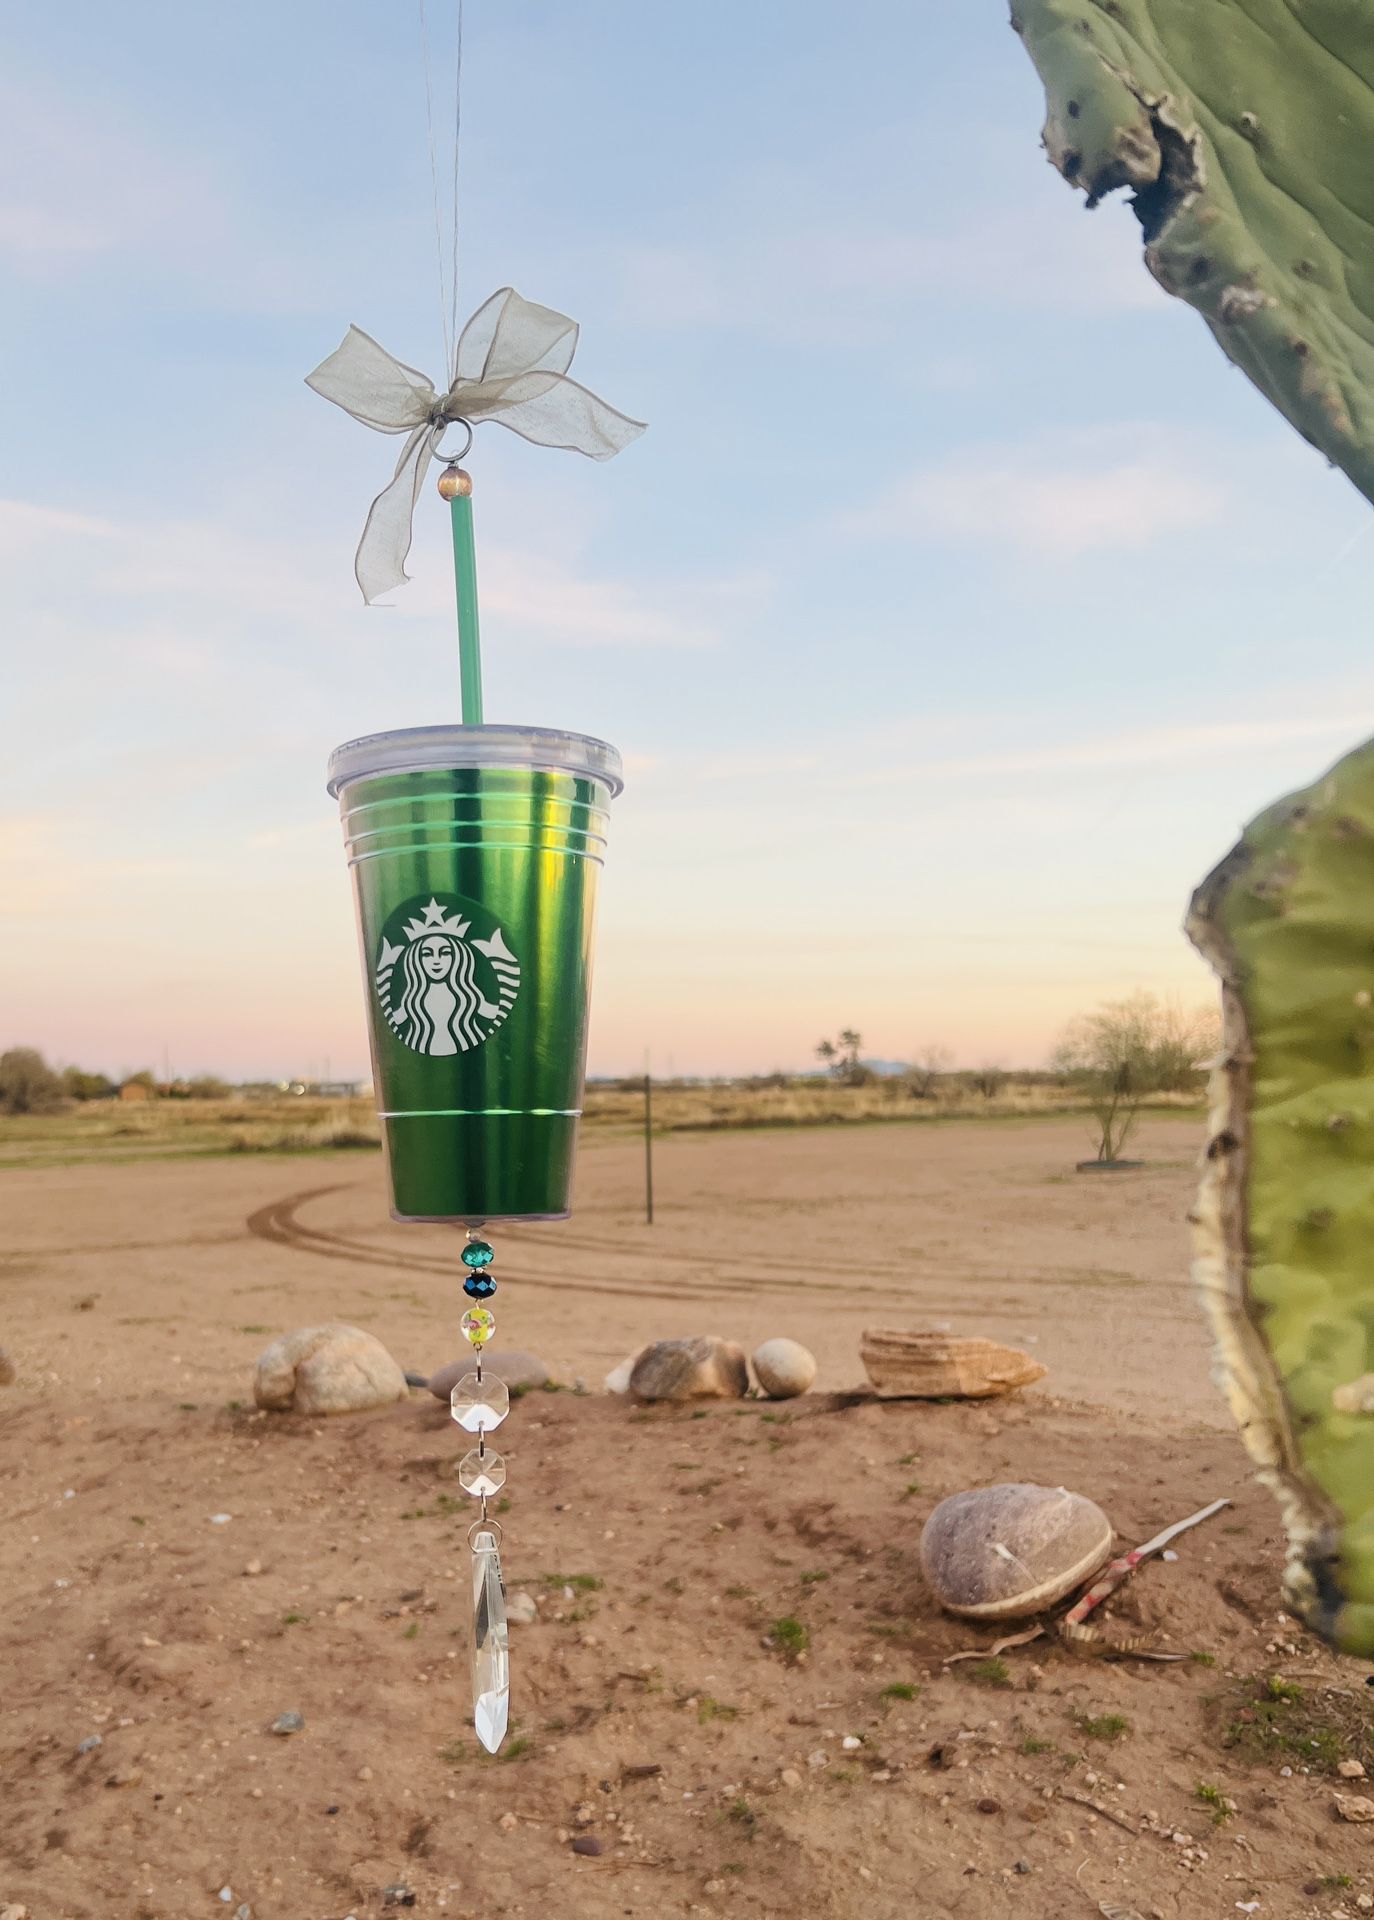 Starbucks Suncatcher Crystal Hanging Mobile Wind chime OOAK Handmade